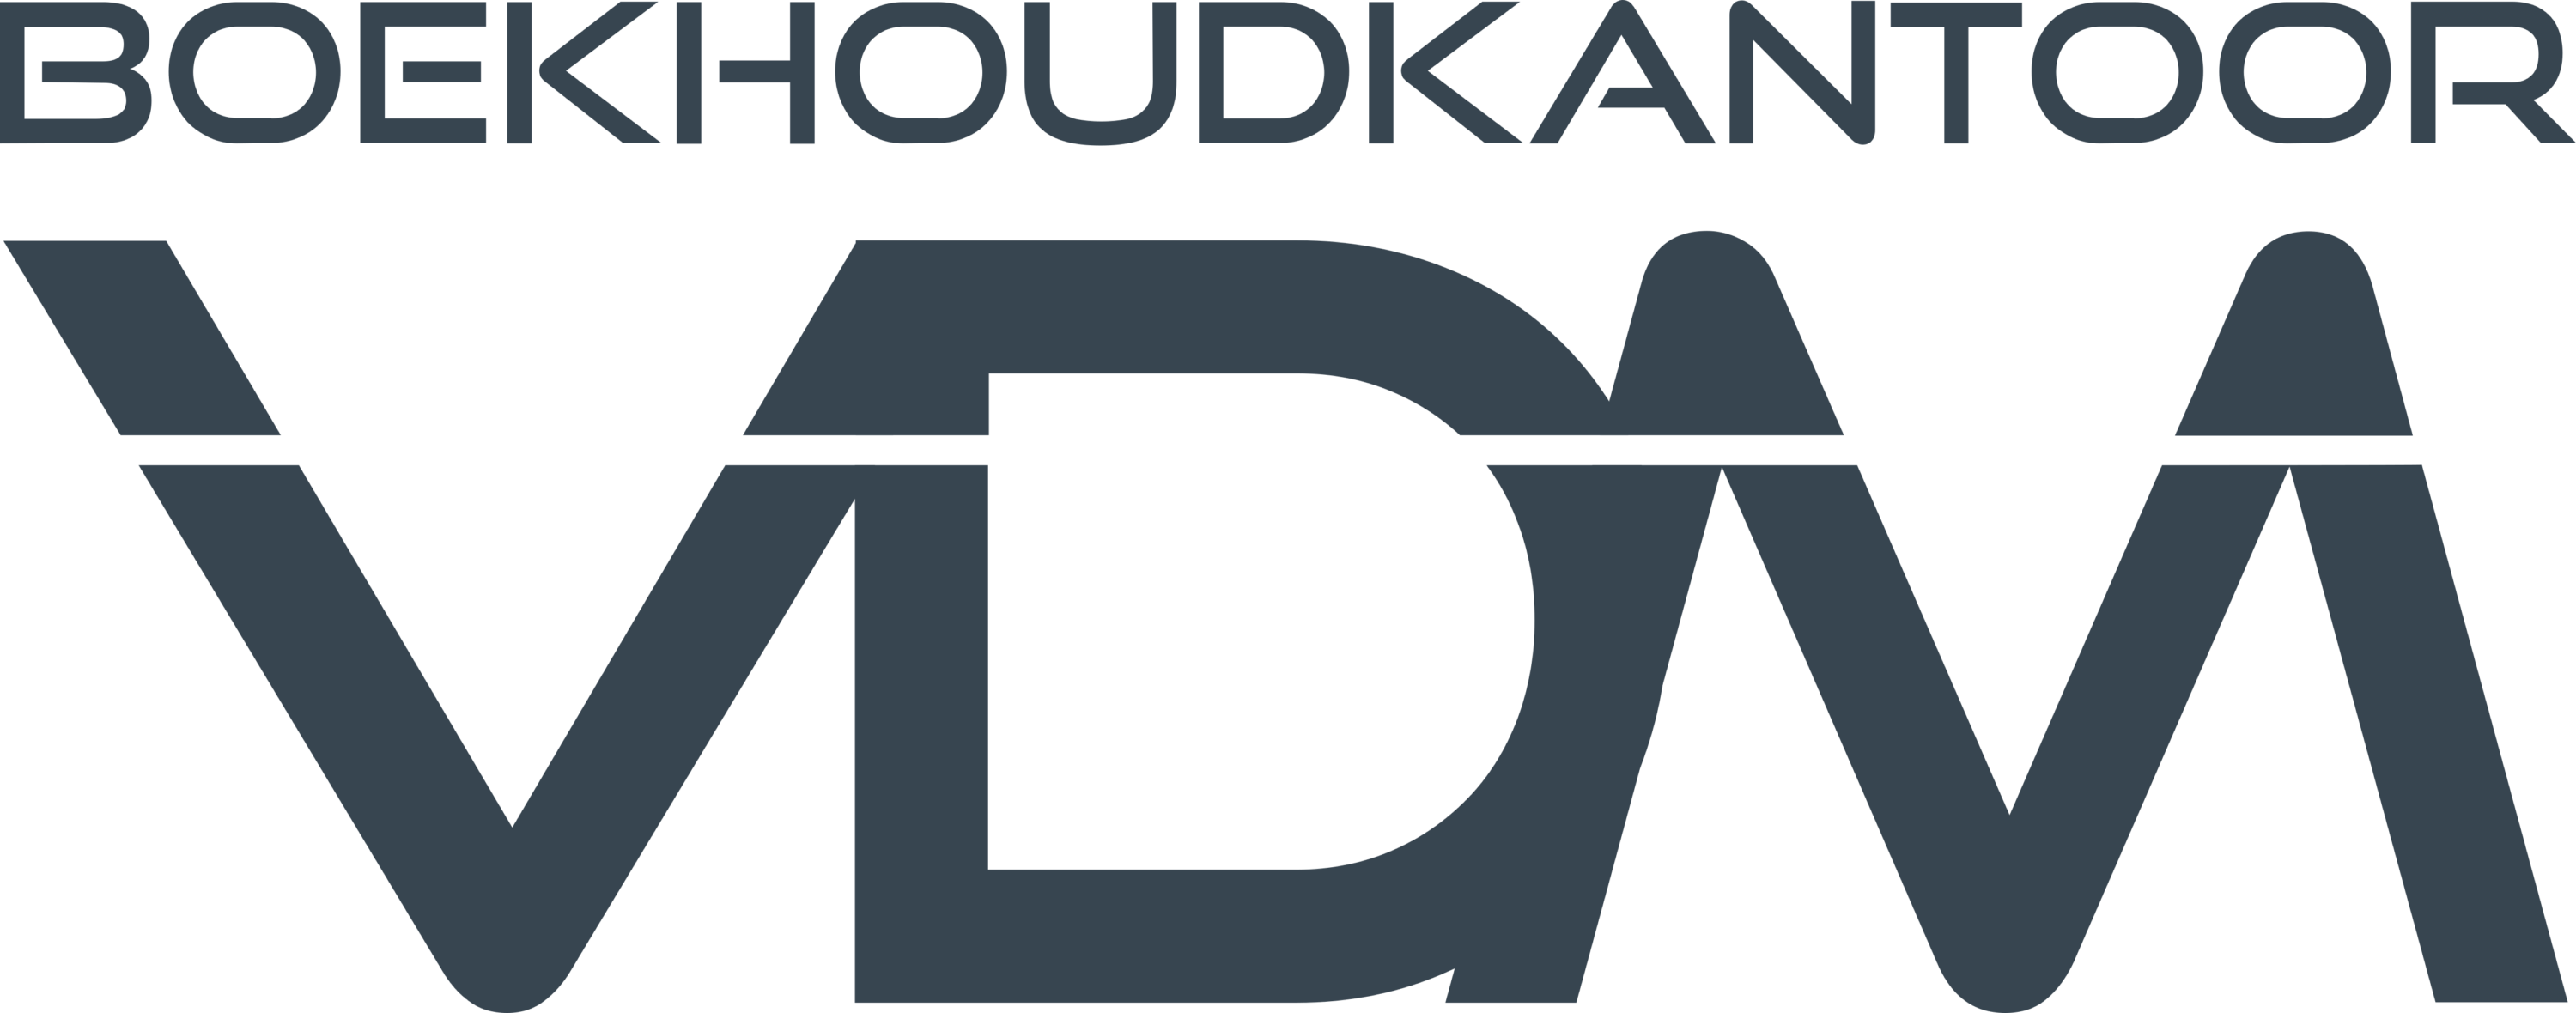 Boekhoudkantoor Van de Merlen Logo